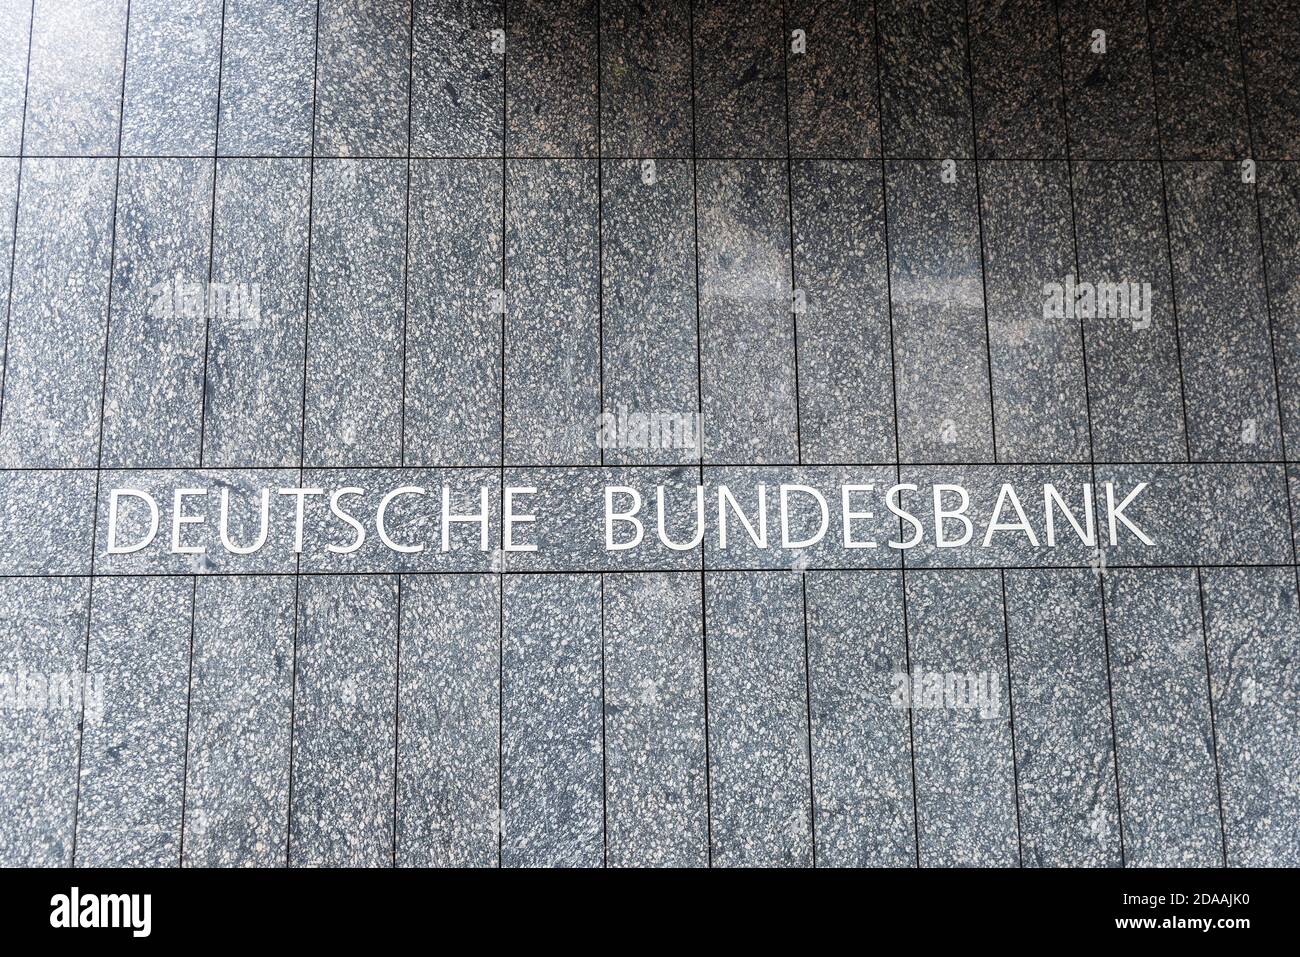 Hamburg, Germany - August 21, 2019: Sign of the headquarters of the Deutsche Bundesbank of Mecklenburg-Vorpommern and Schleswig-Holstein in Hamburg, G Stock Photo